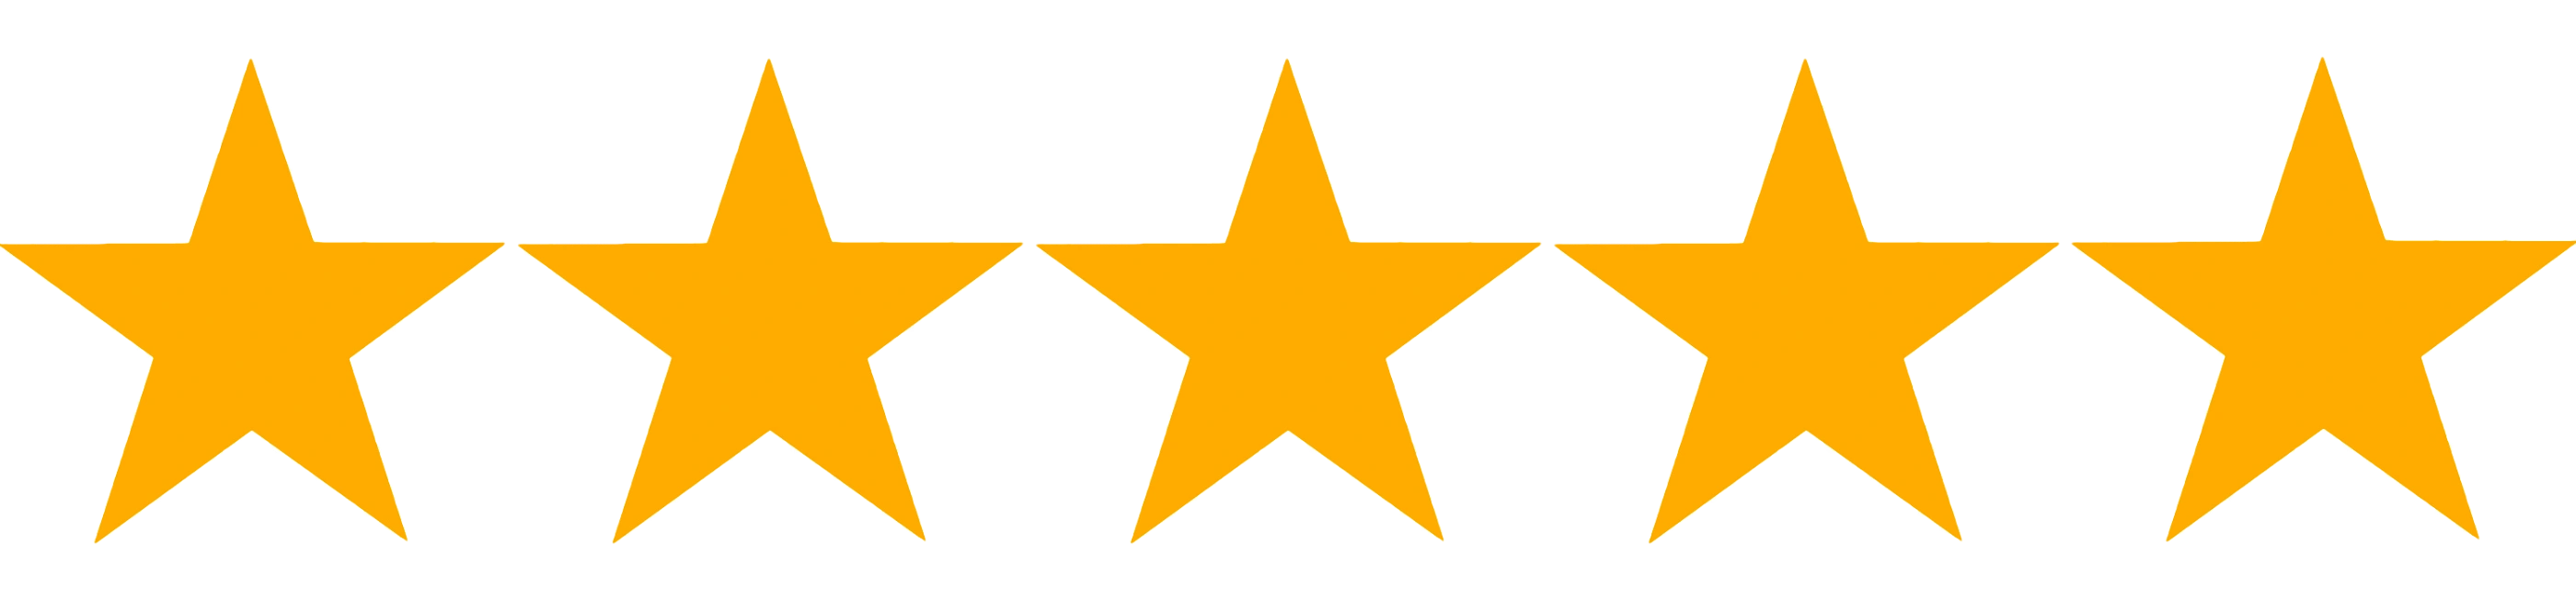 five-stars